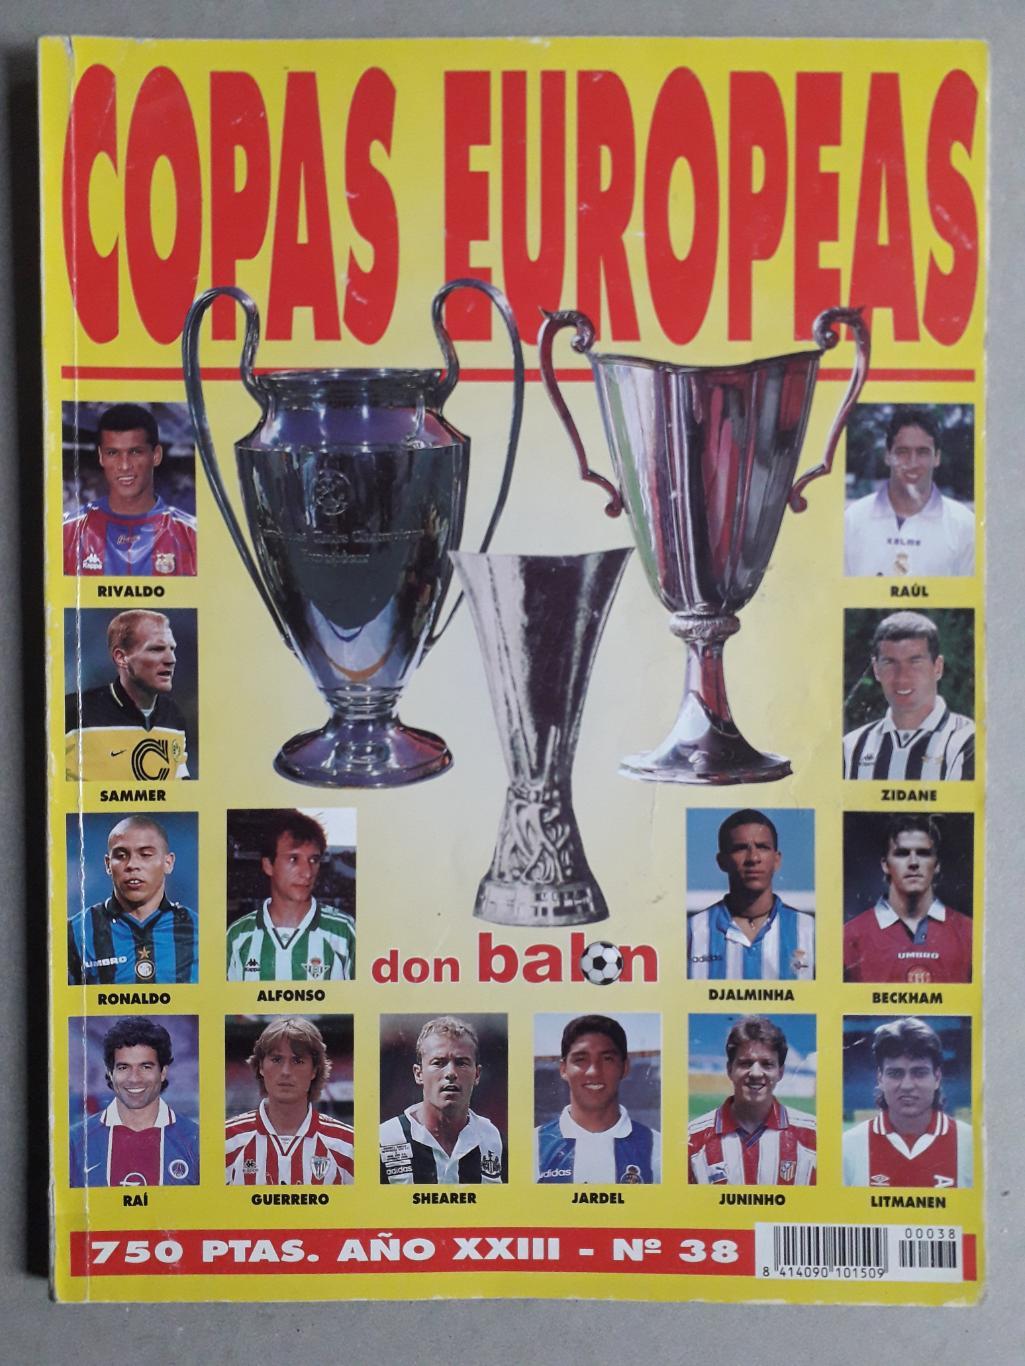 Don Balon Copas Europeas 1997/98